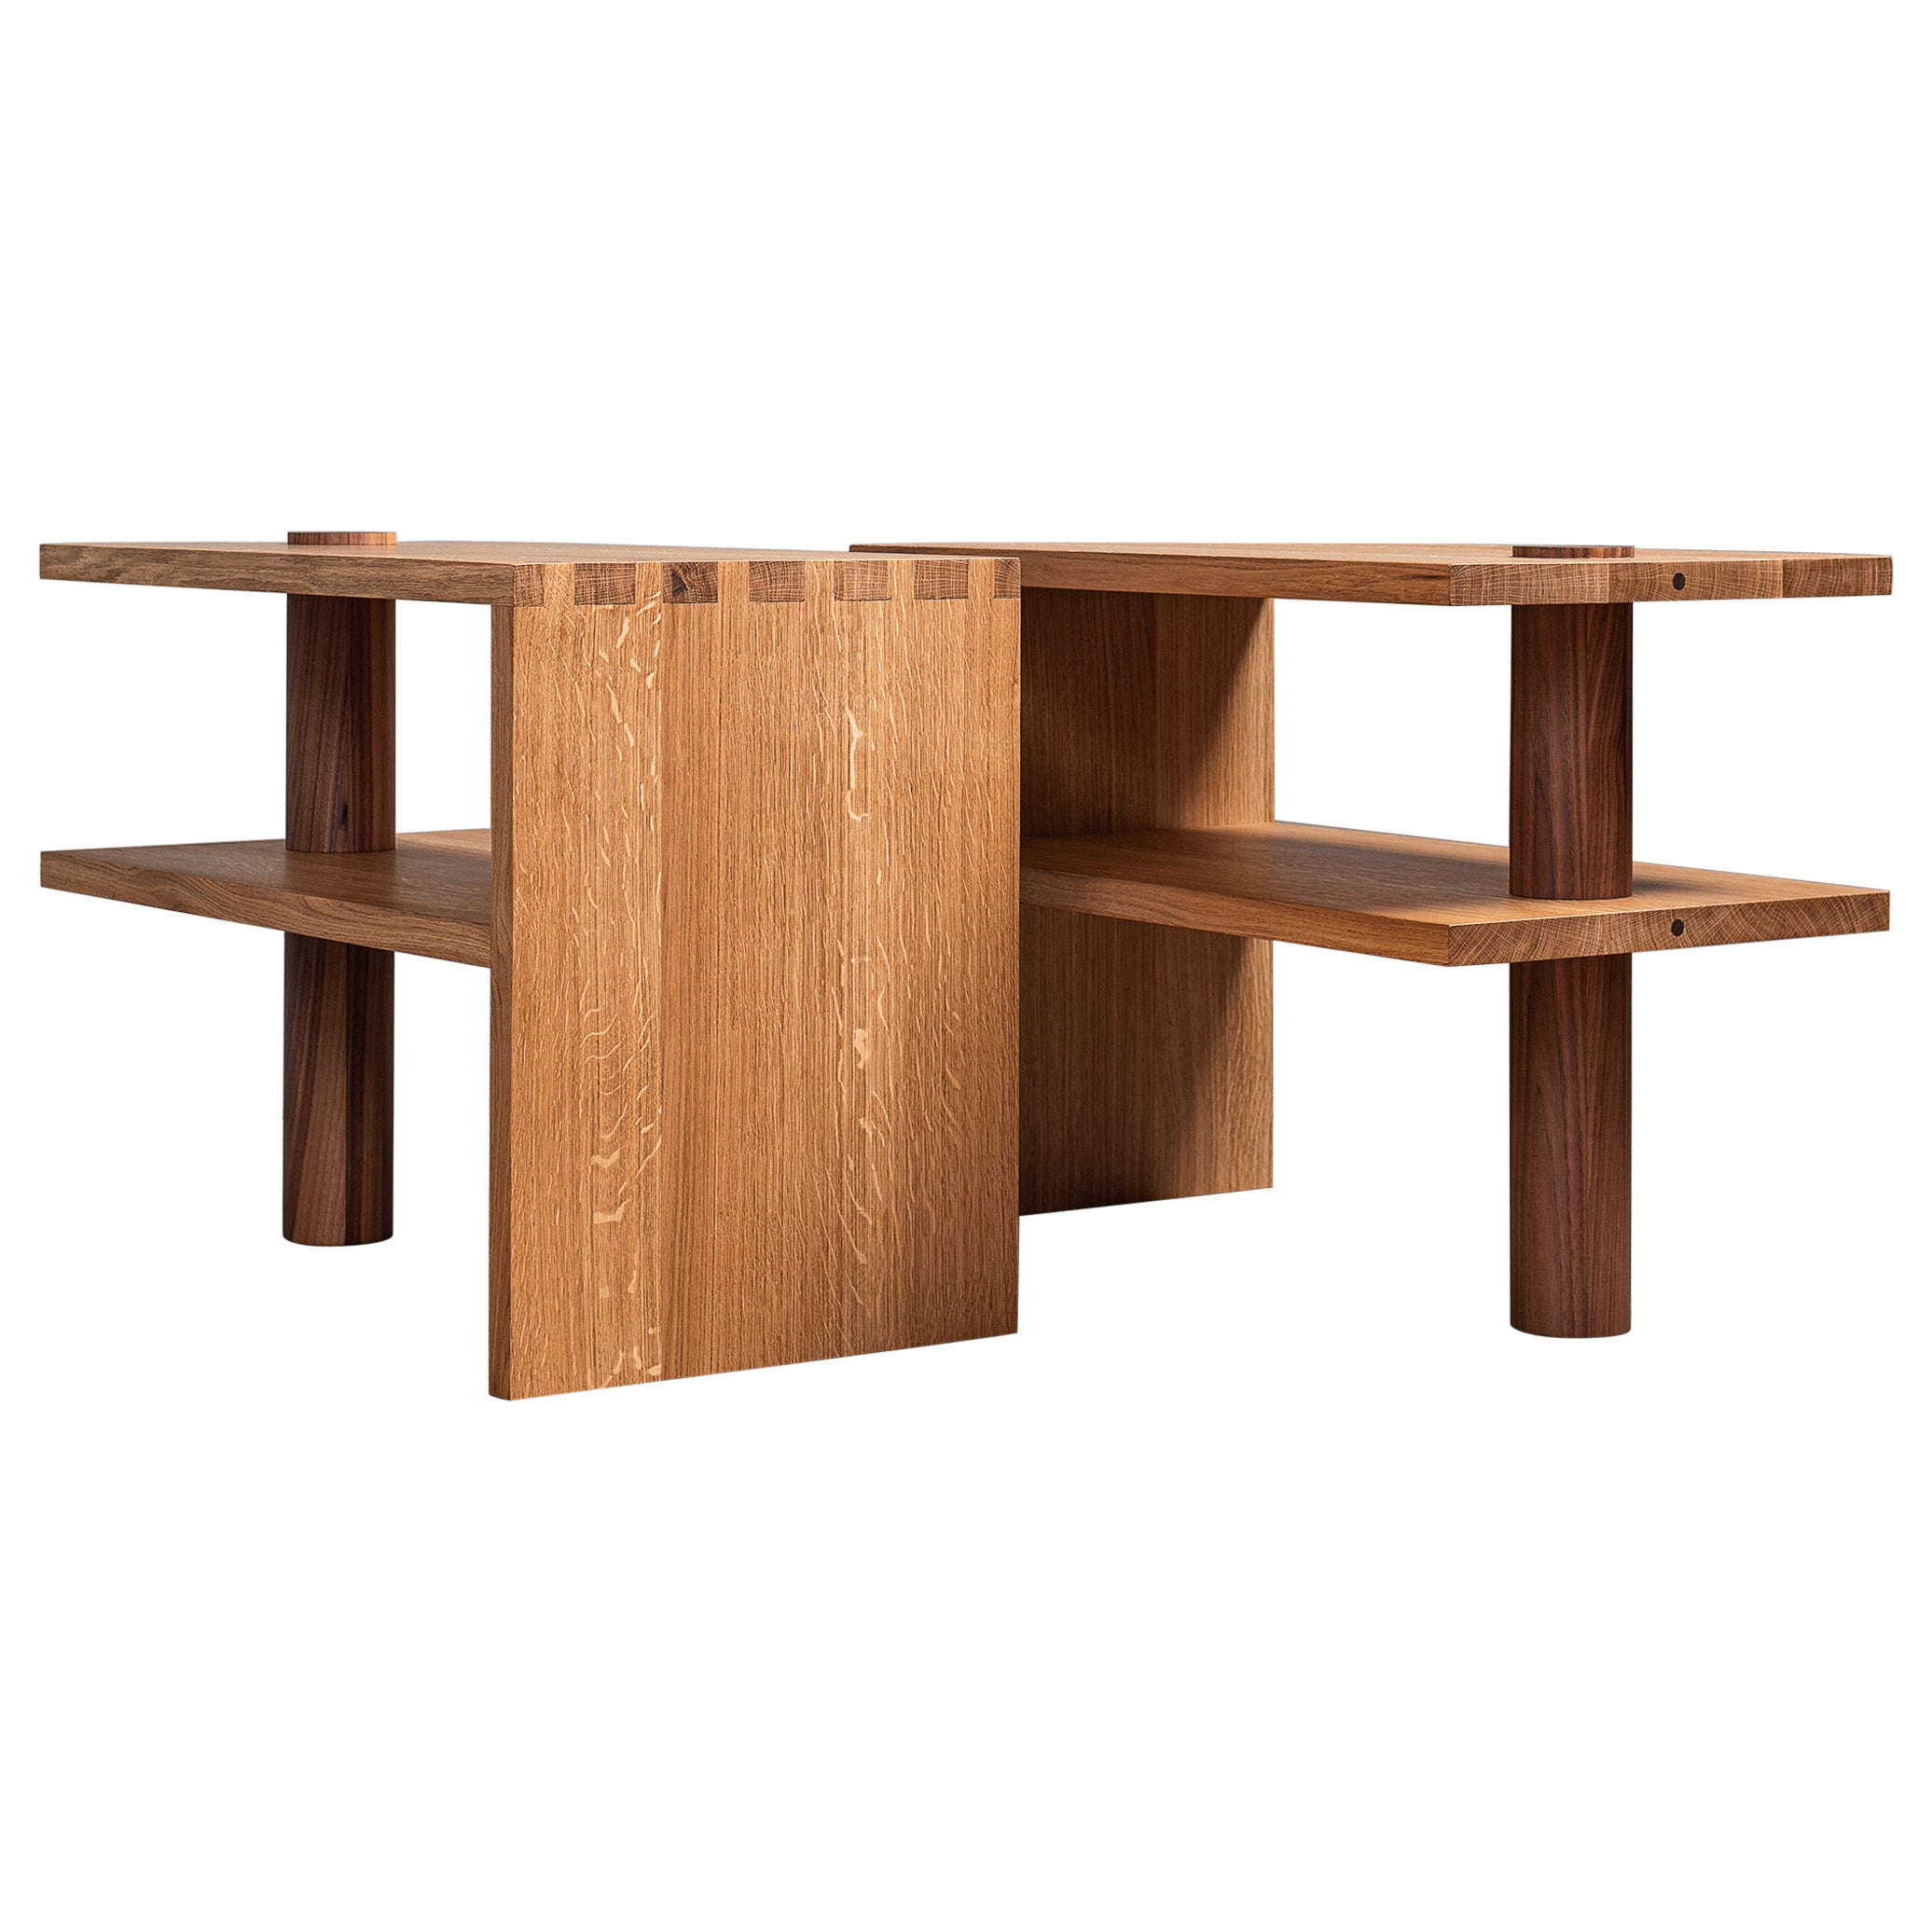 Grandes tables d'extrémité en chêne et noyer, fabriquées à la main, d'inspiration architecturale